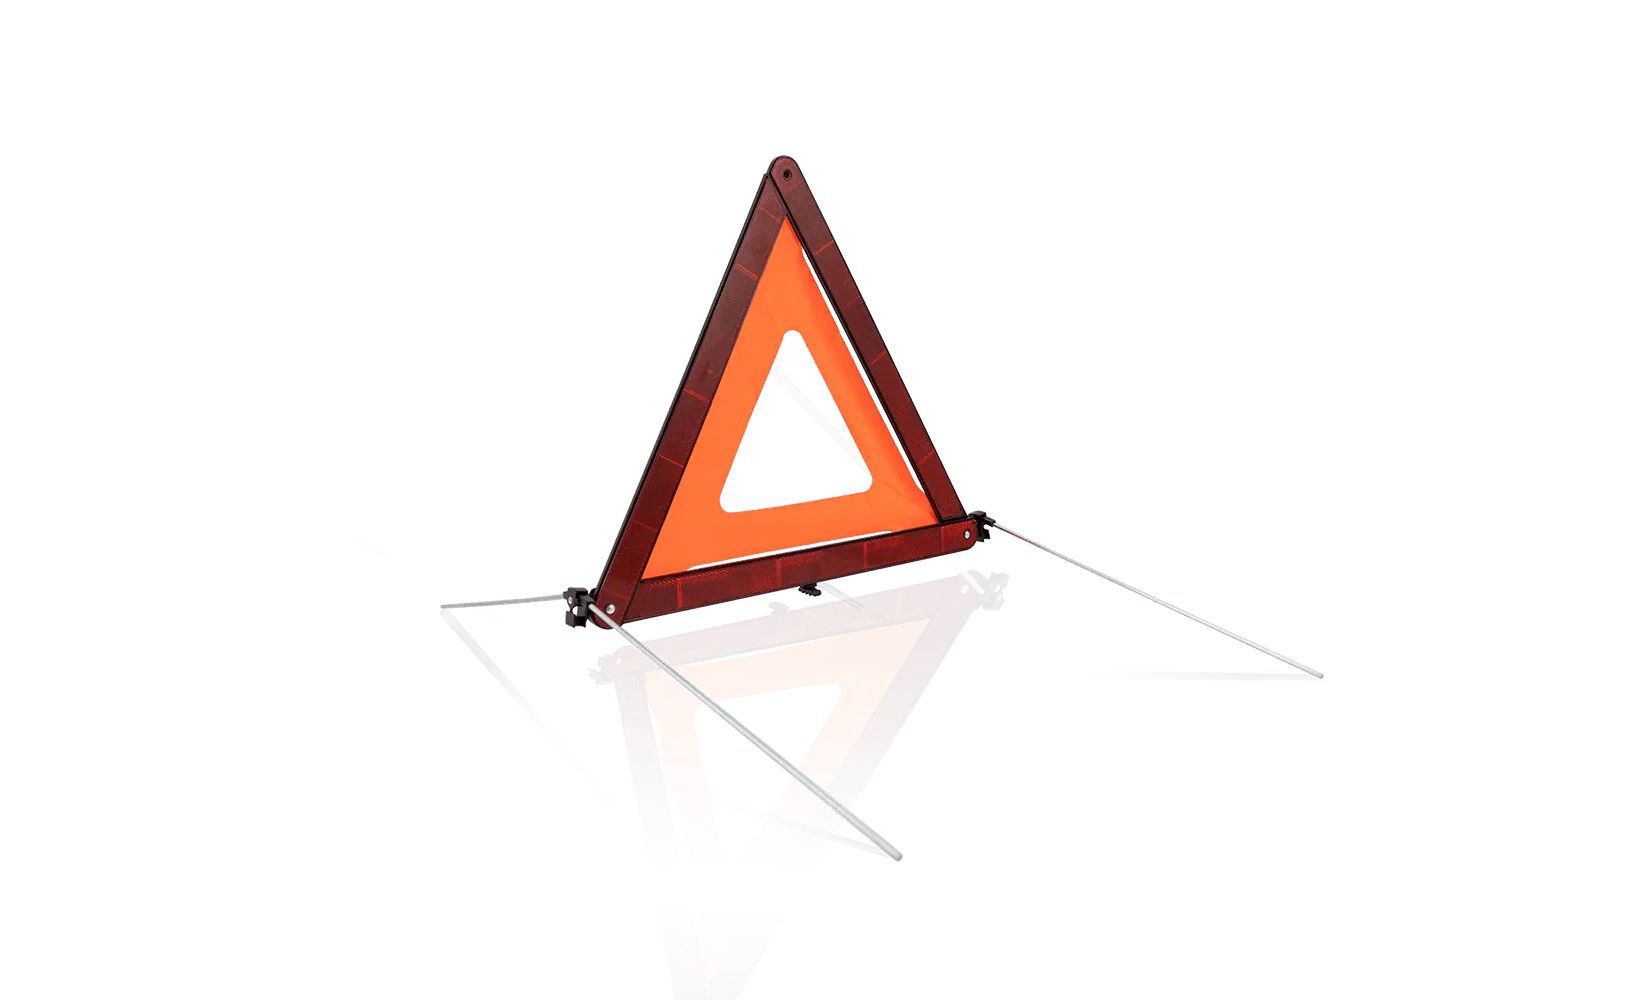 Car Warning Triangle - Green Flag vGroup